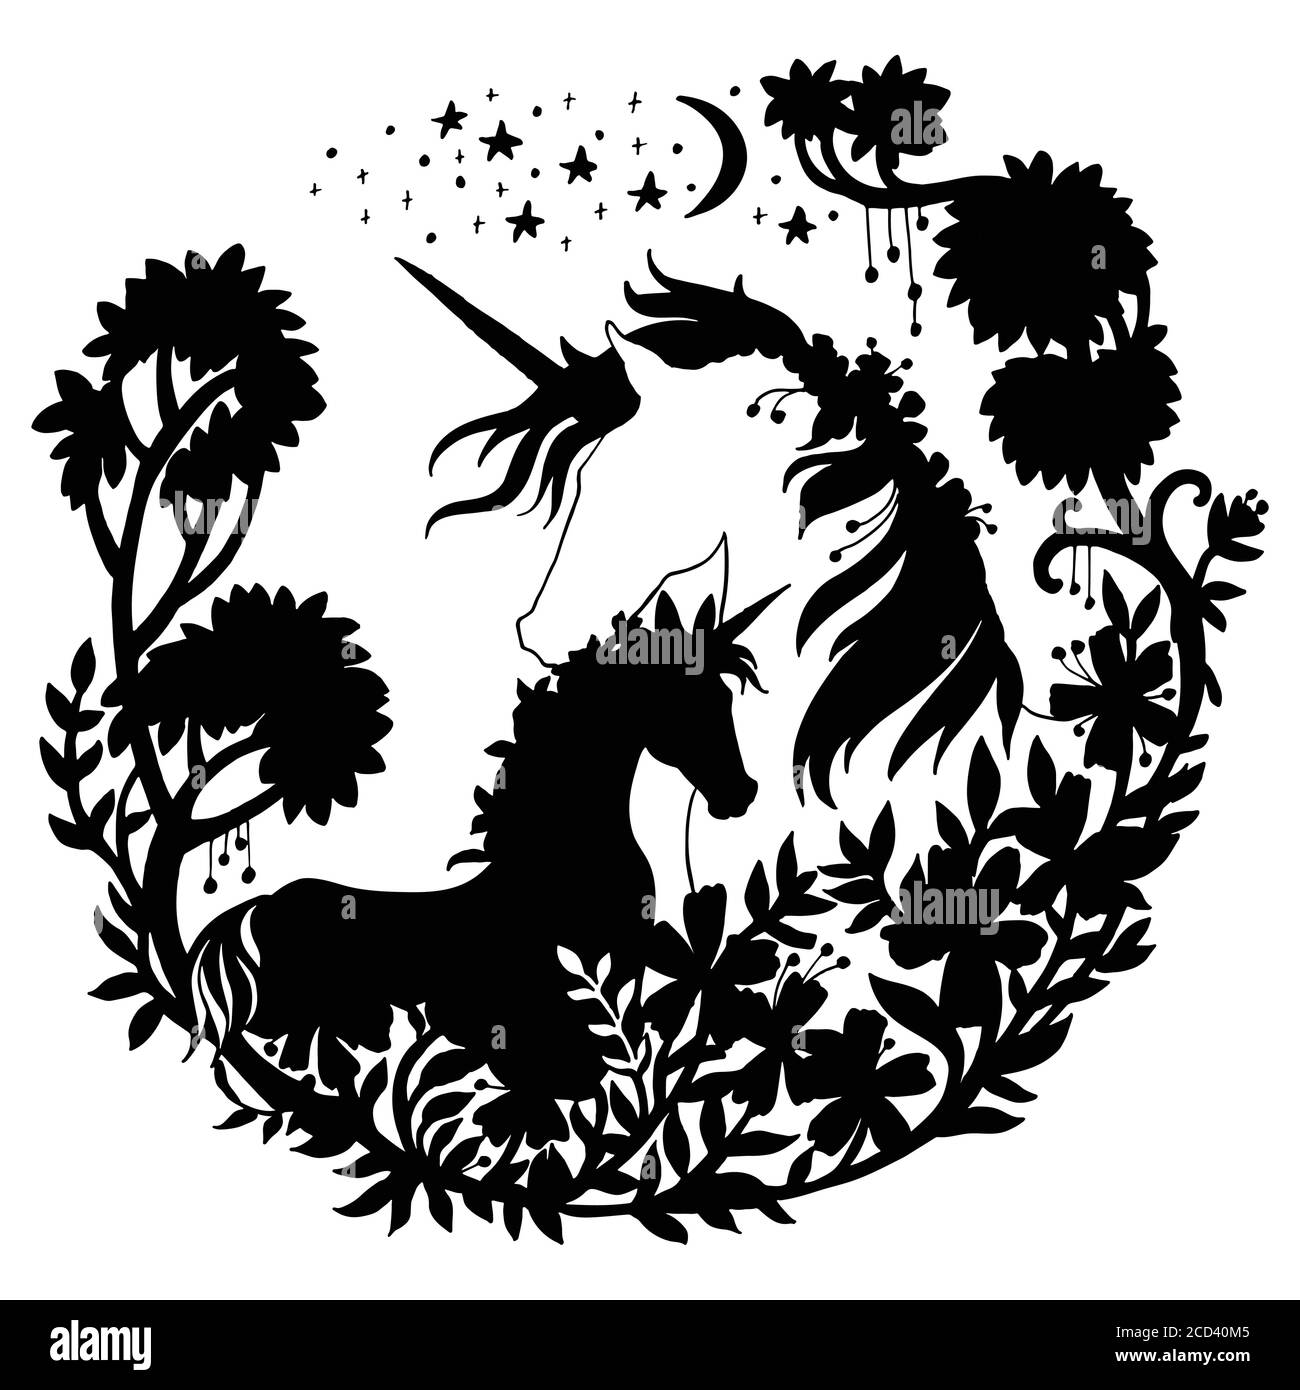 Vector belle licorne et foal avec des arbres et des étoiles dans la composition de cercle. Illustration de silhouette noire isolée sur fond blanc. Pour le modèle Illustration de Vecteur